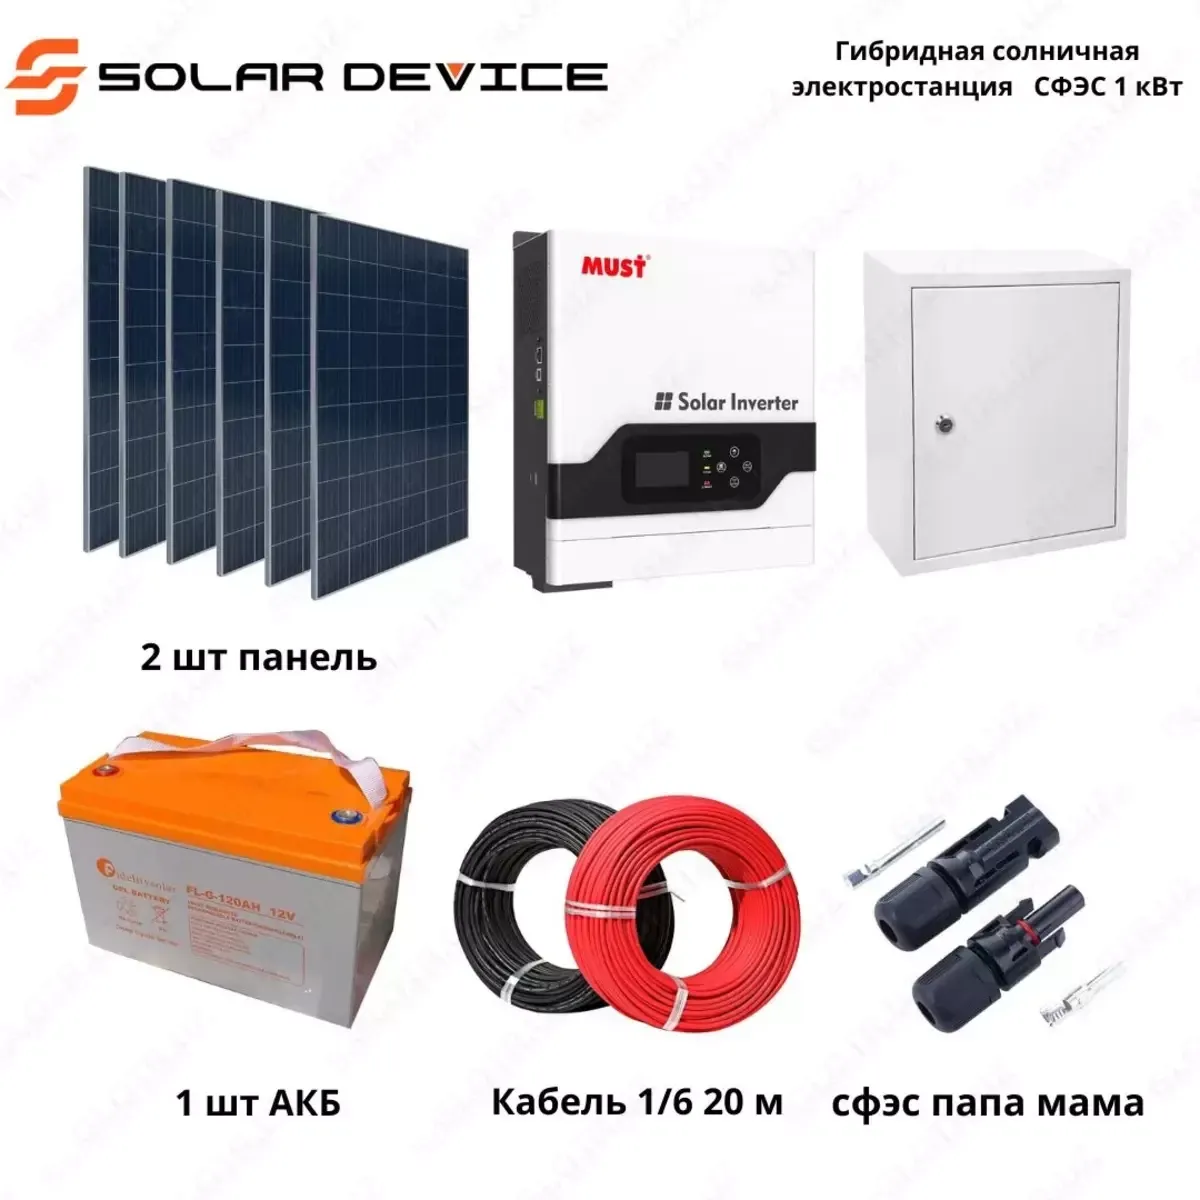 Гибридная солнечная электростанция "SOLAR" СФЭС (1 кВт)#1